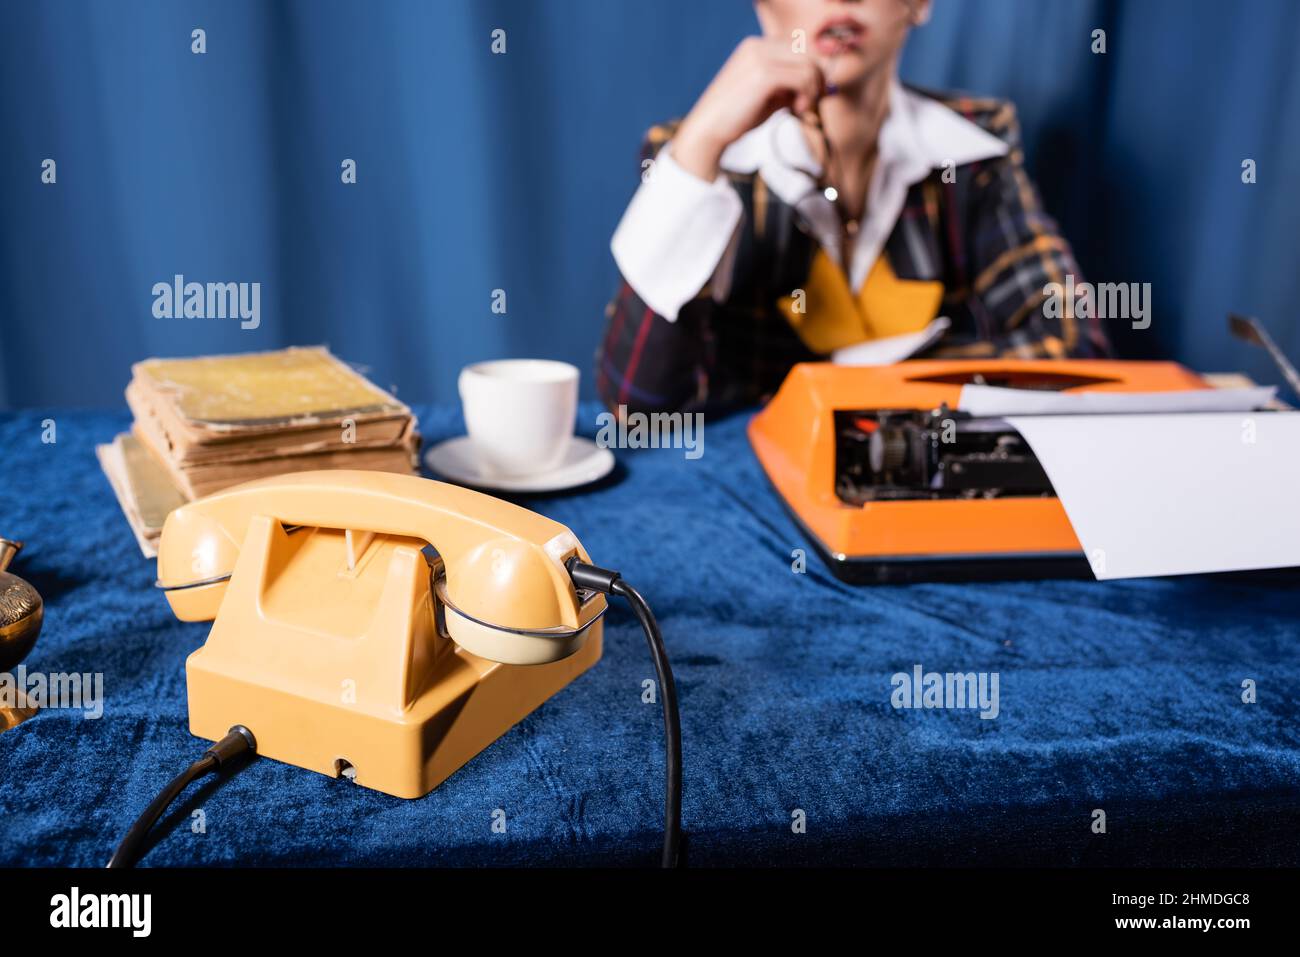 Teilansicht einer verschwommenen Frau in der Nähe eines Vintage-Telefons, einer Schreibmaschine und Büchern auf einer blauen Velours-Tischdecke Stockfoto